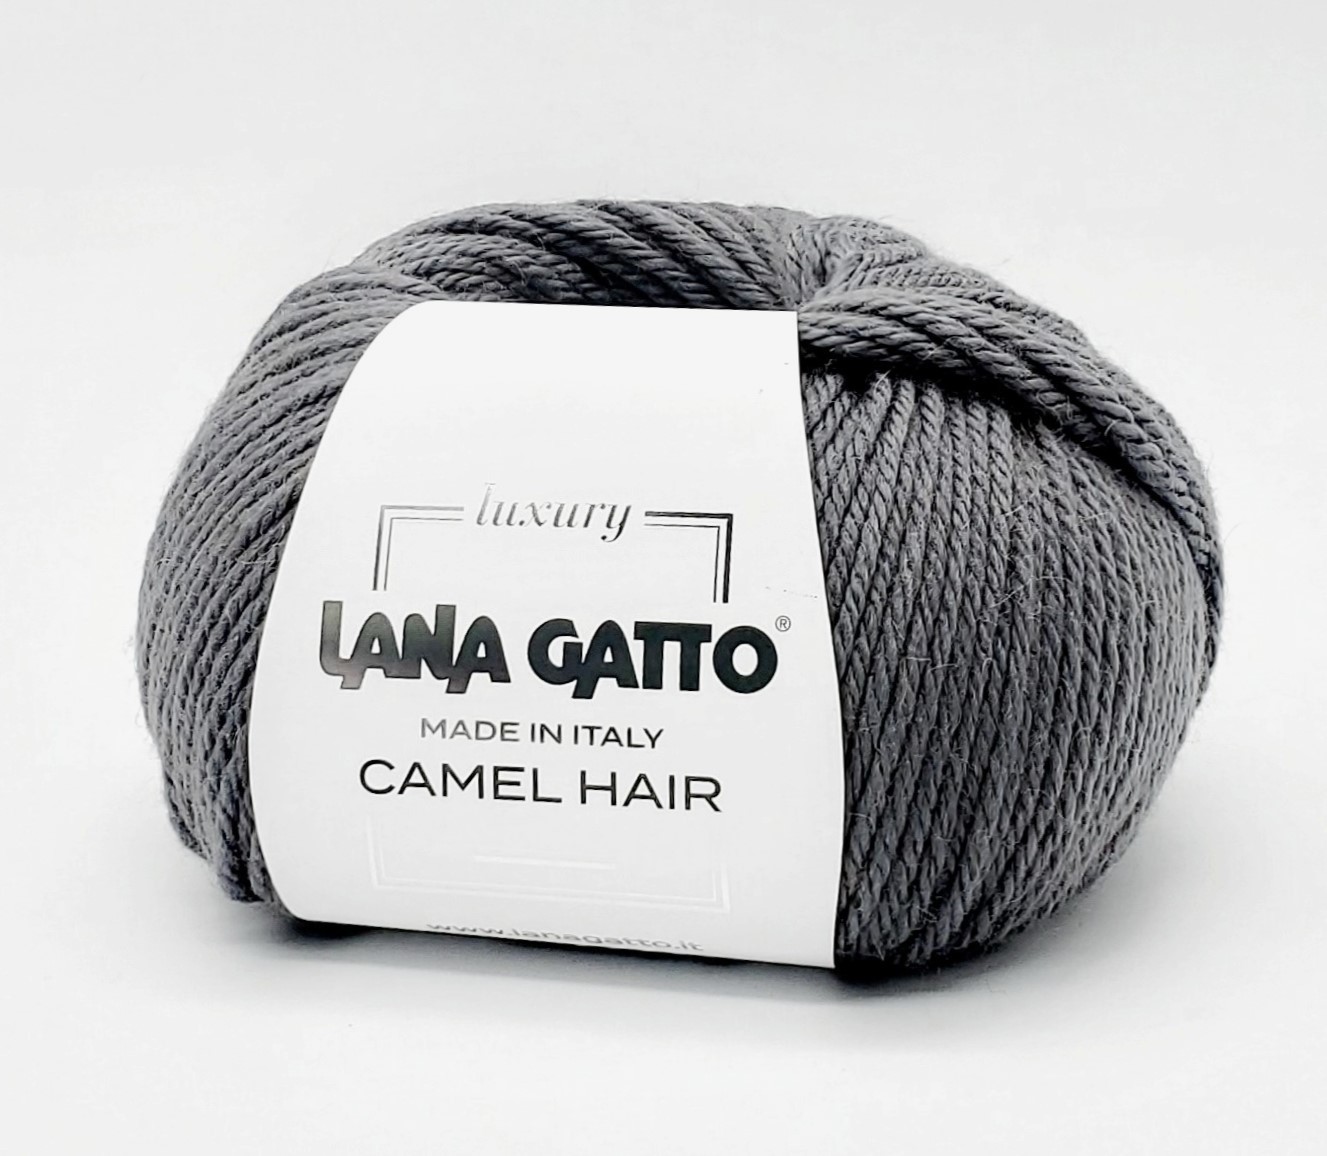 Купить пряжу lana gatto. Пряжа Lana gatto Camel hair. Пряжа Lana gatto Camel hair 8427. Lana gatto Camel hair палитра.